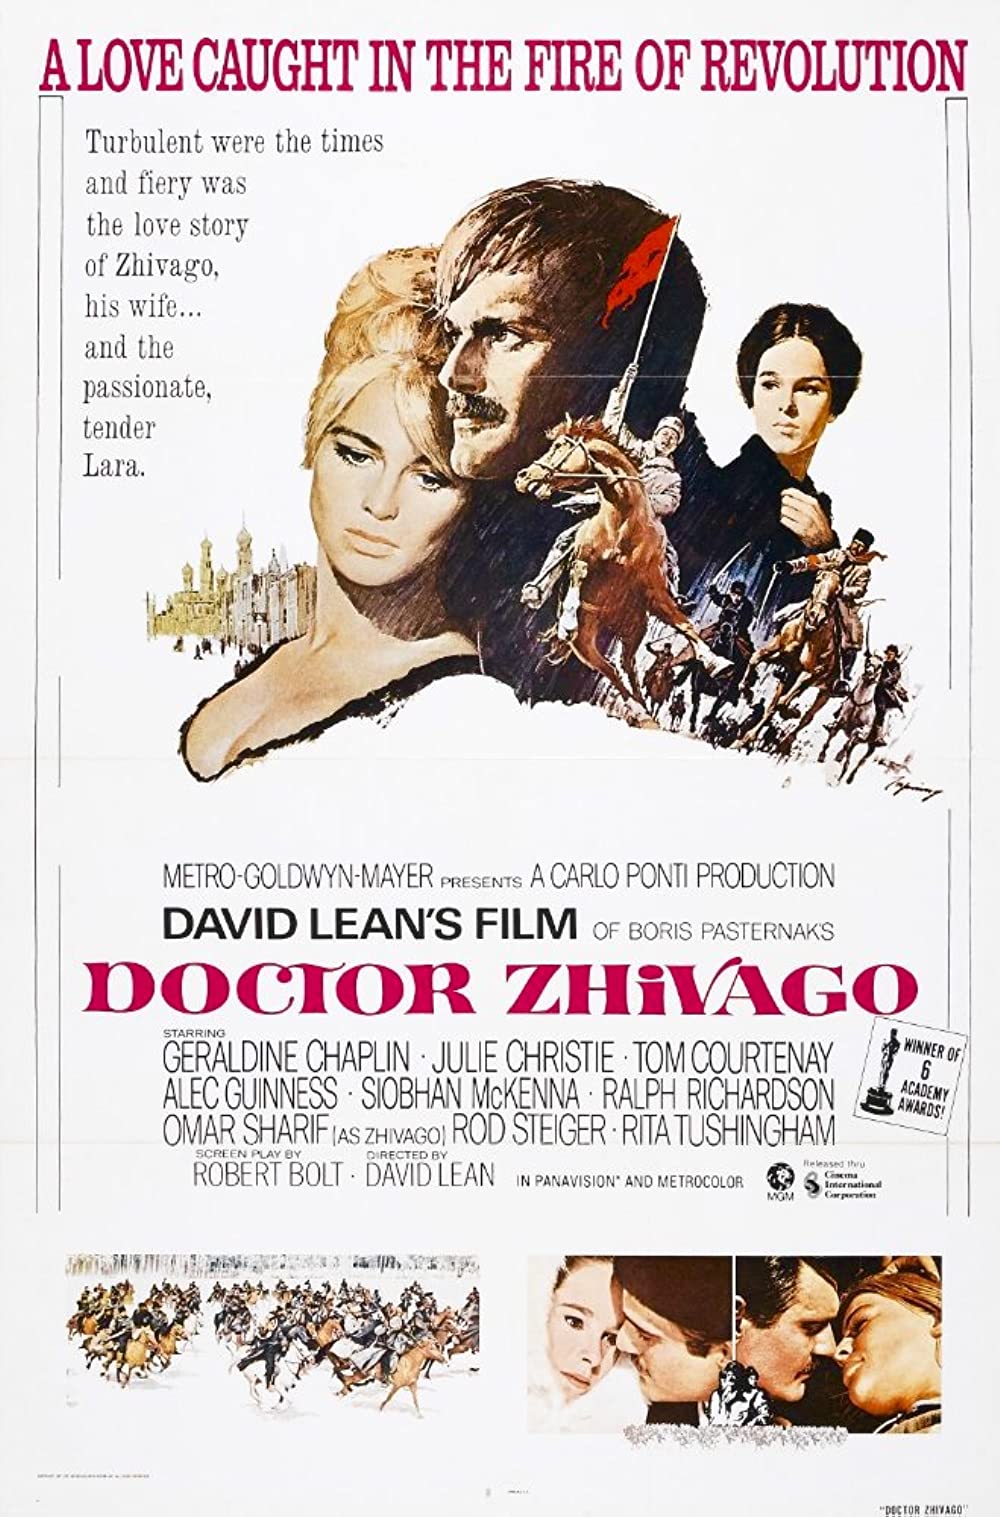 Filmbeschreibung zu Doctor Zhivago